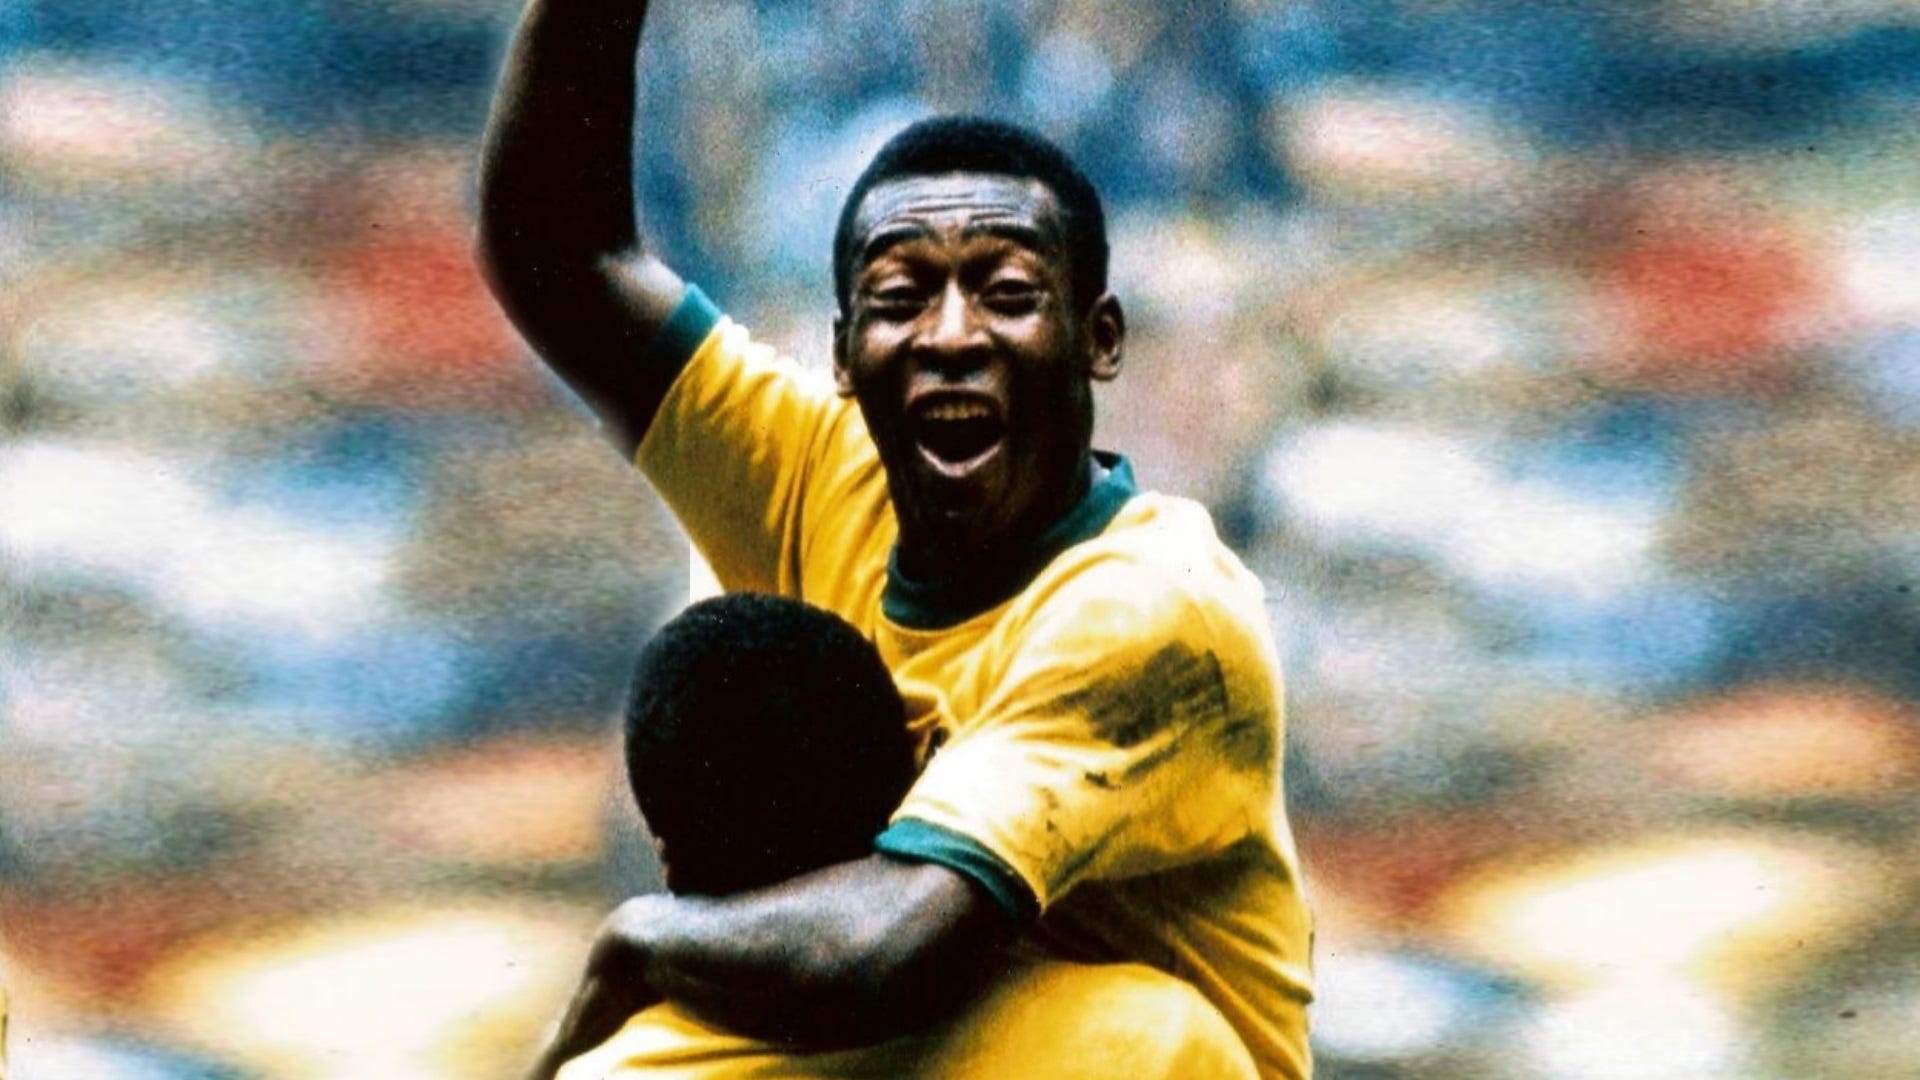 Falece Pelé, o maior jogador de futebol de todos os tempos